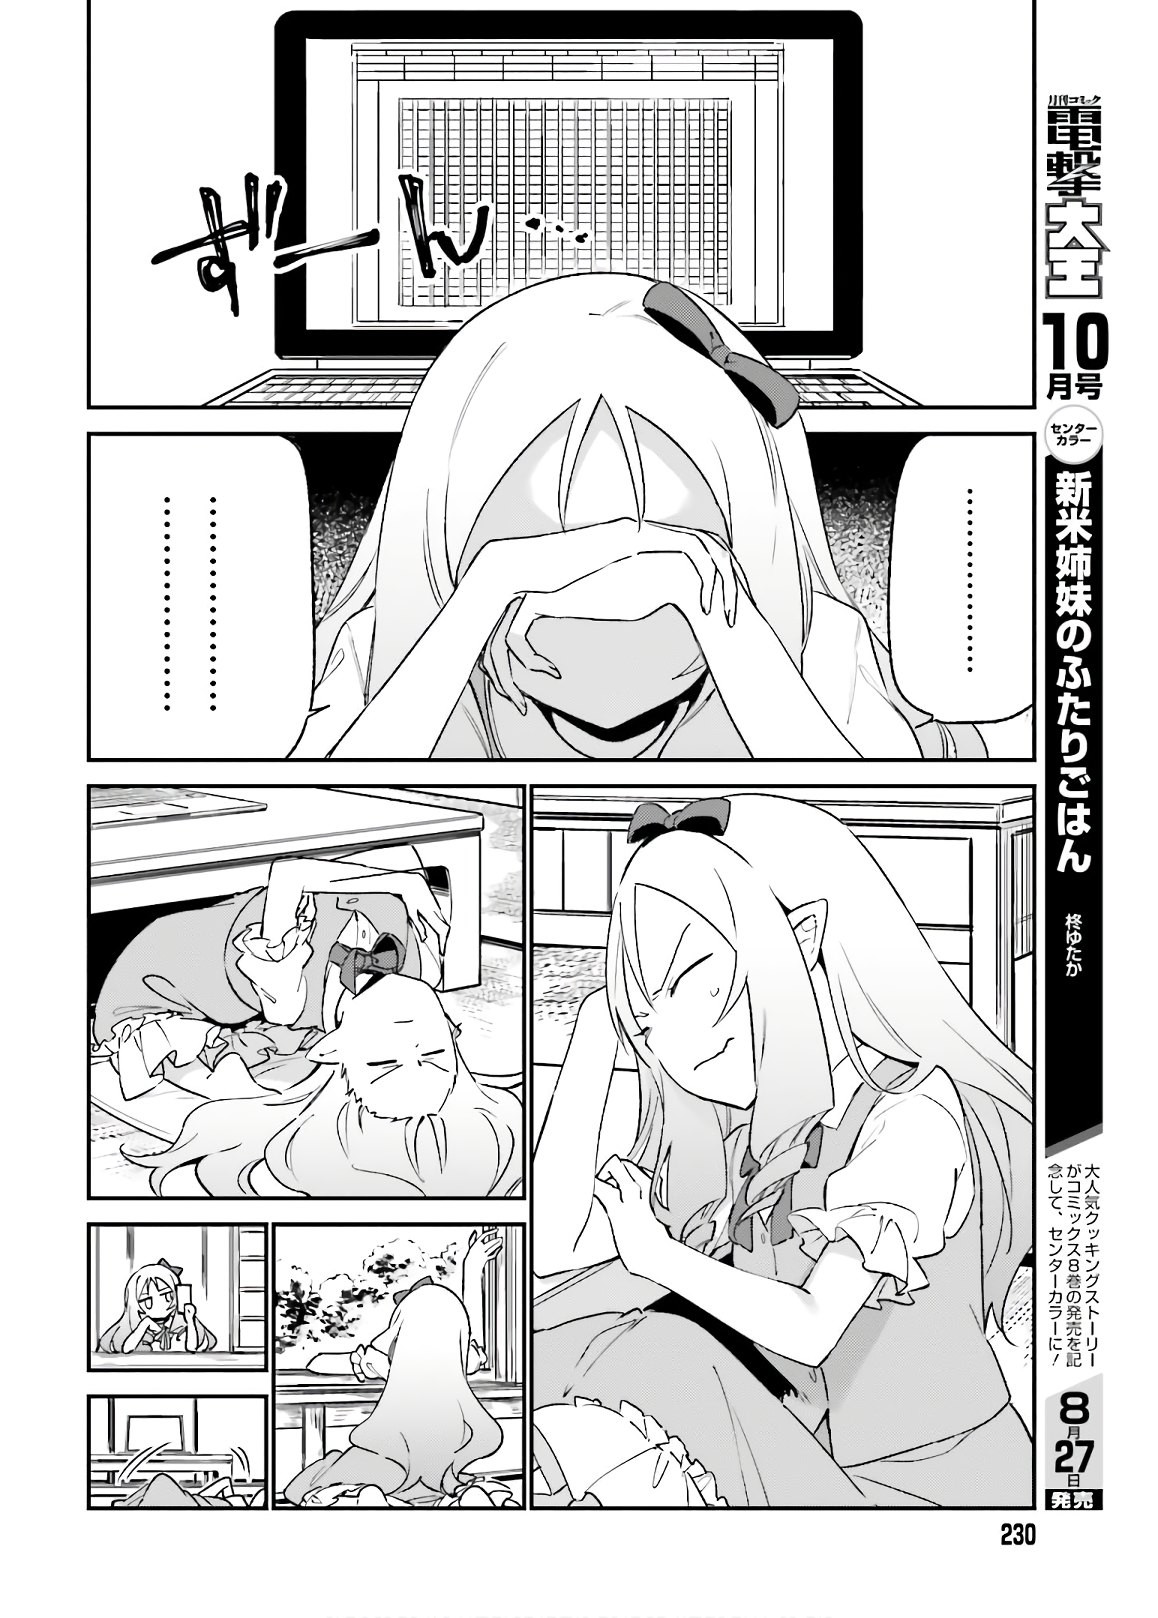 Ero Manga Sensei - Chapter 70 - Page 30